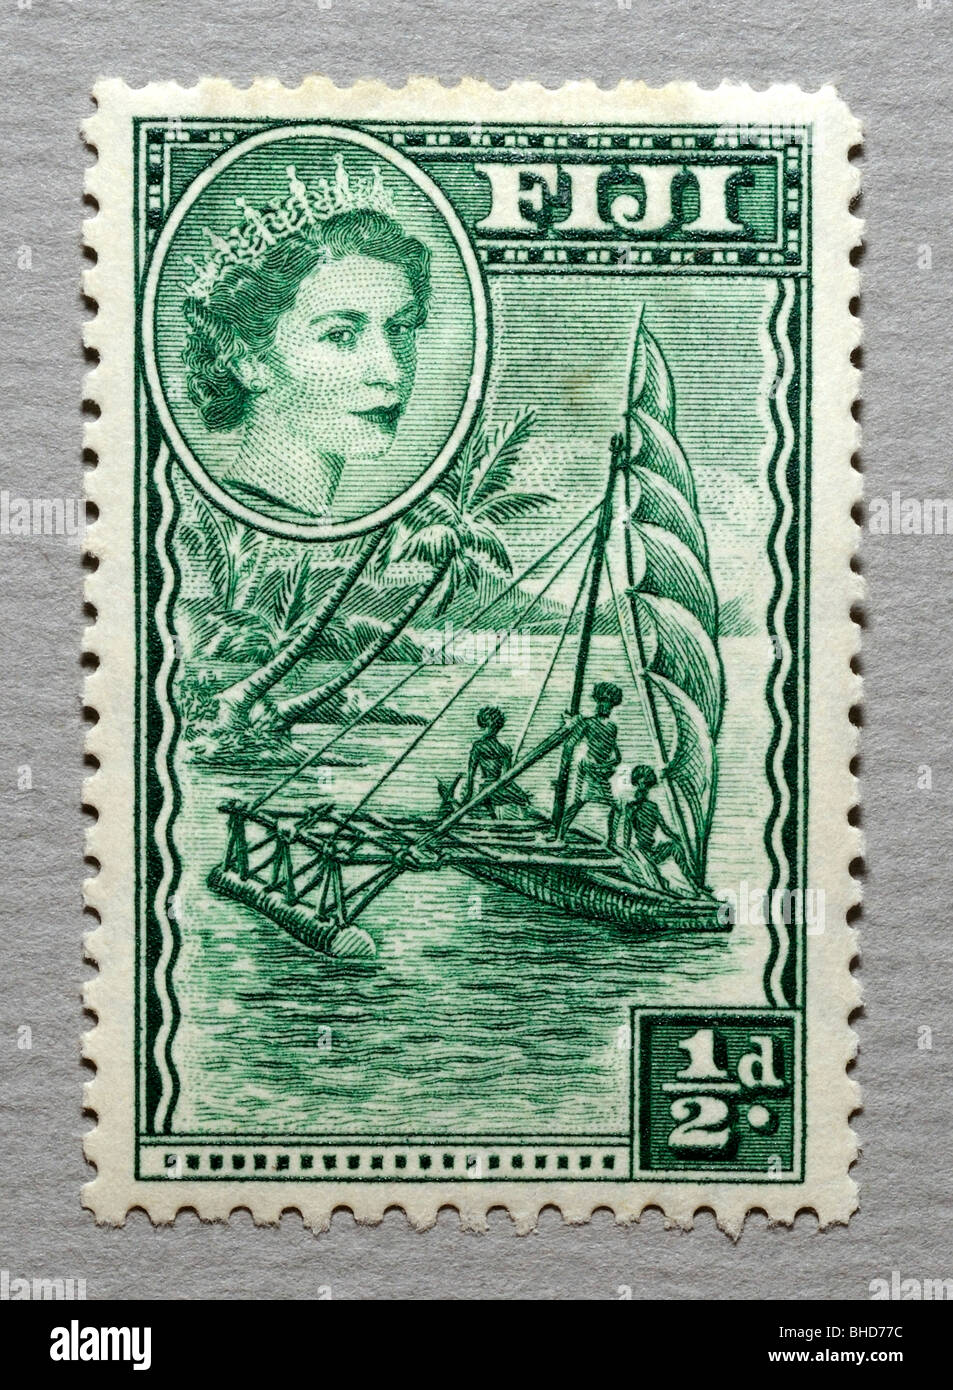 Fidschi-Briefmarke. Stockfoto